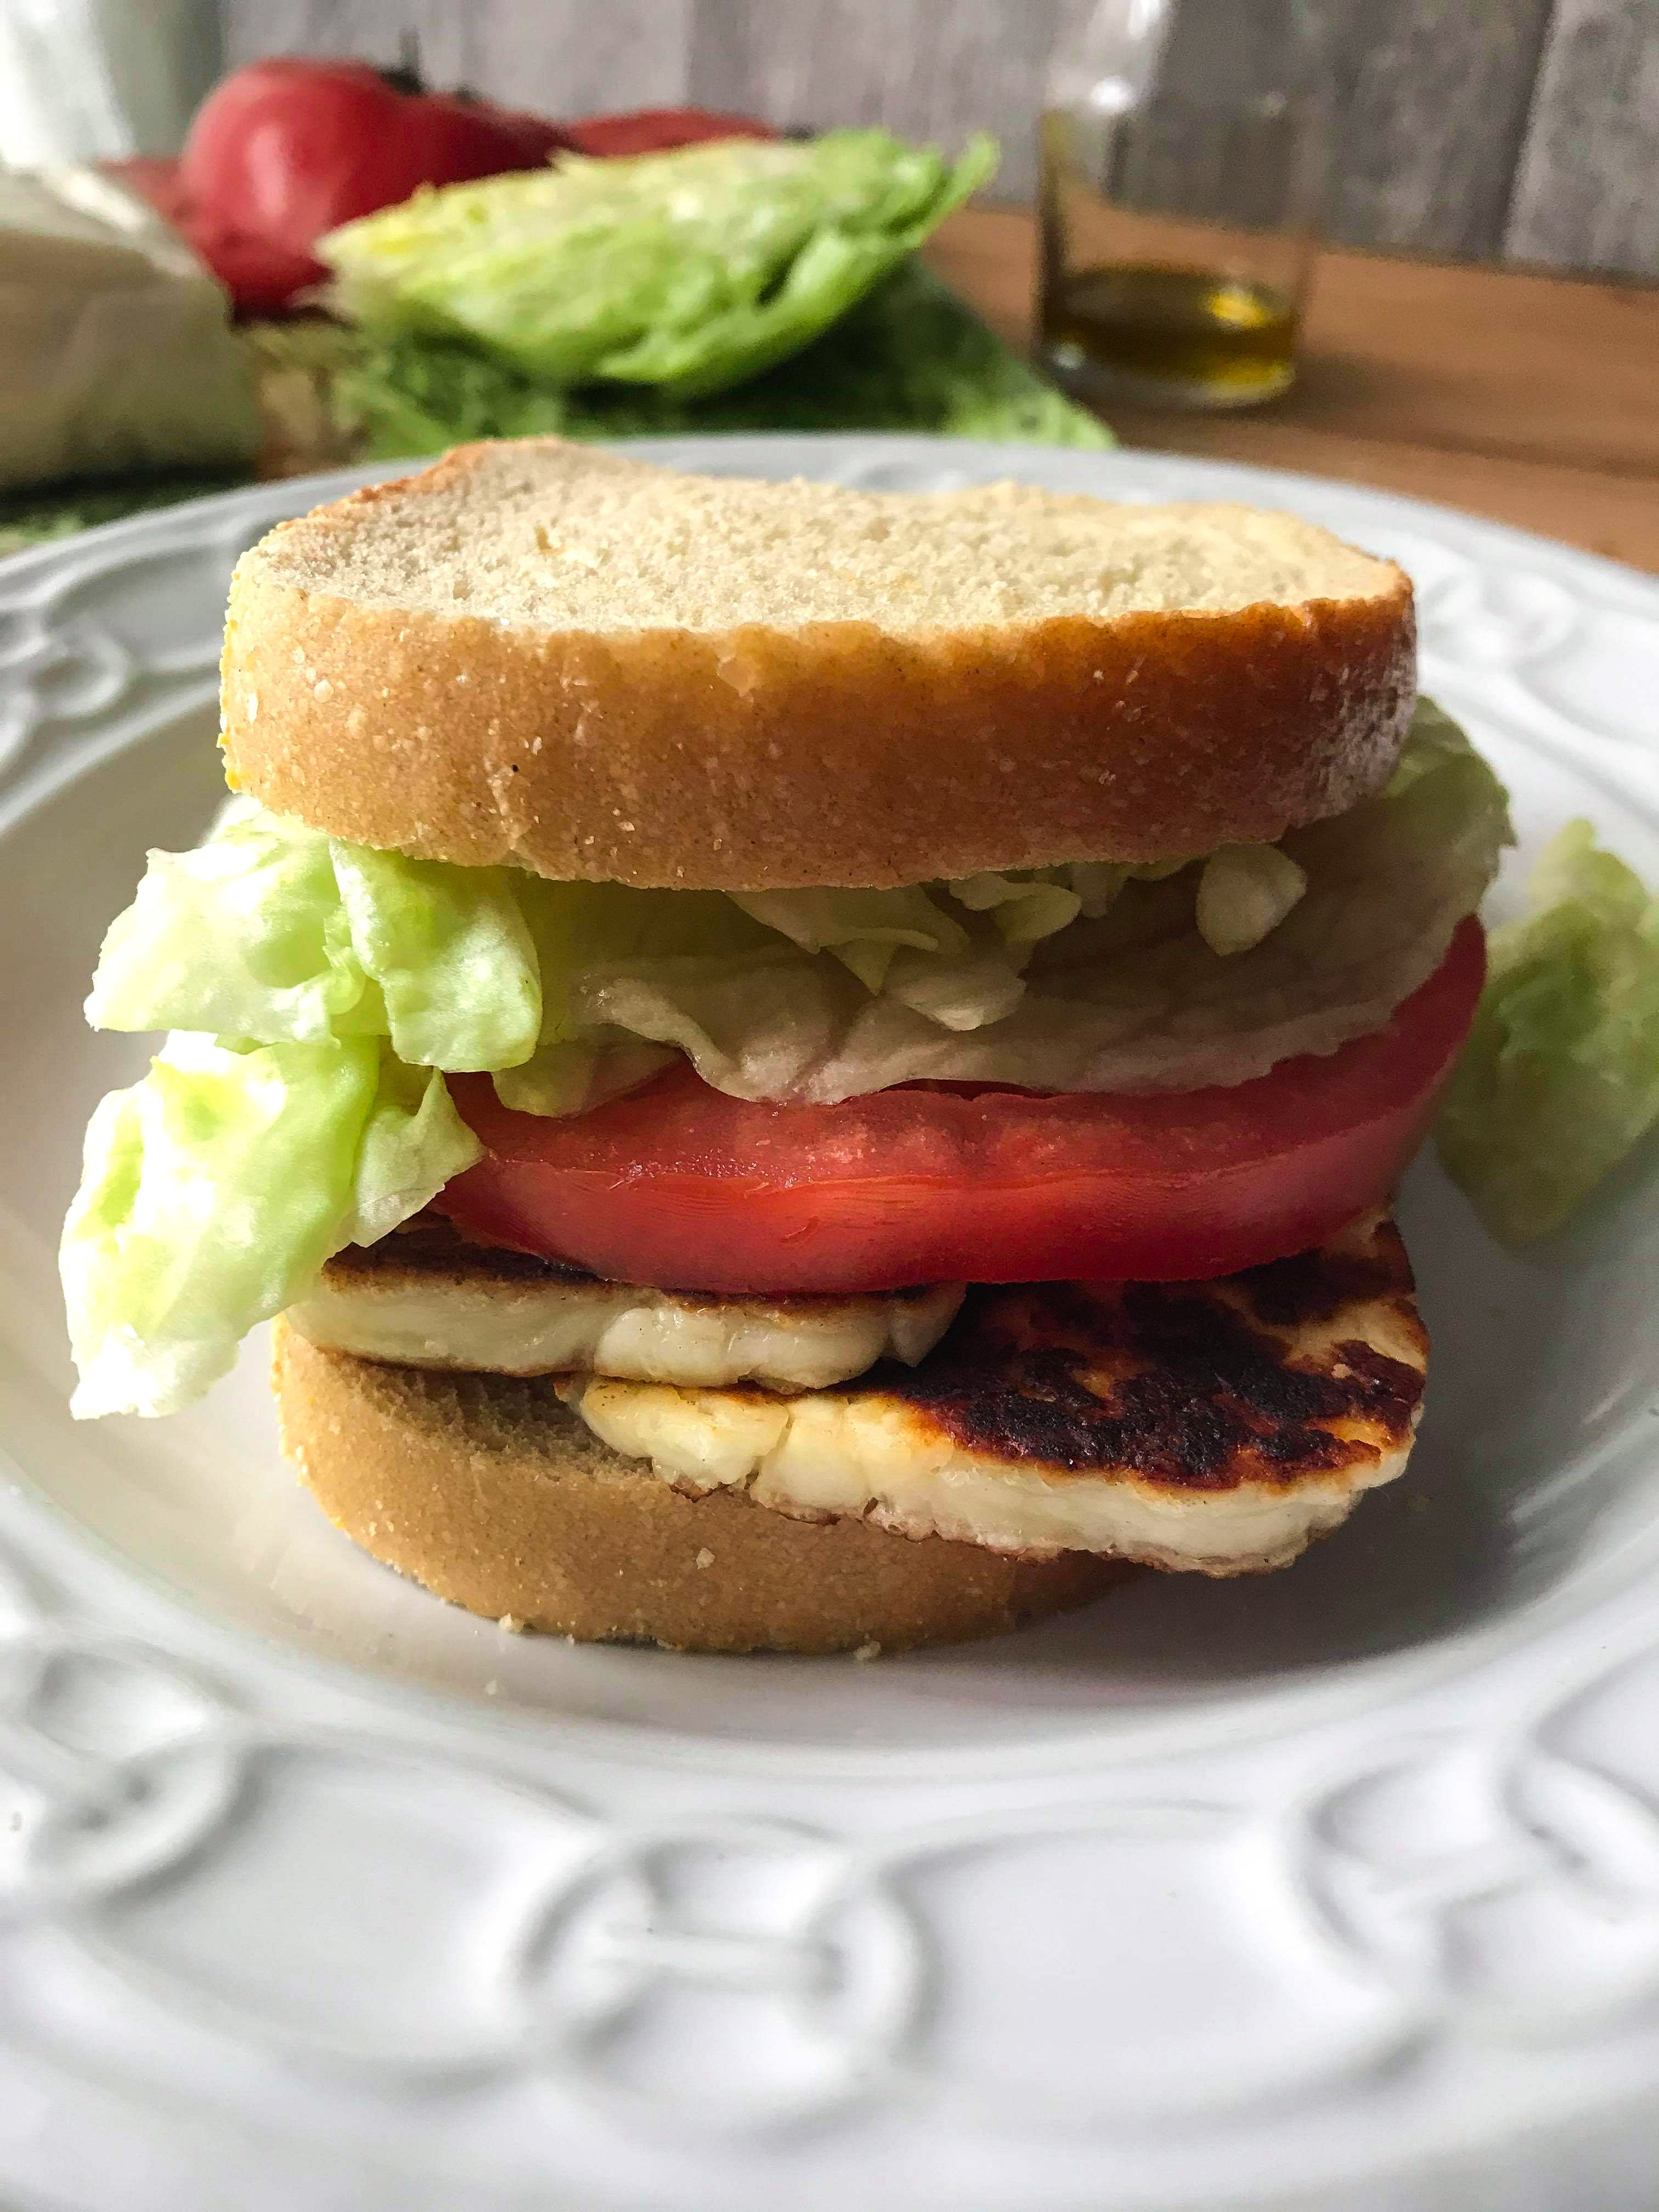 The H.L.T. or Halloumi, lettuce and tomato sandwich